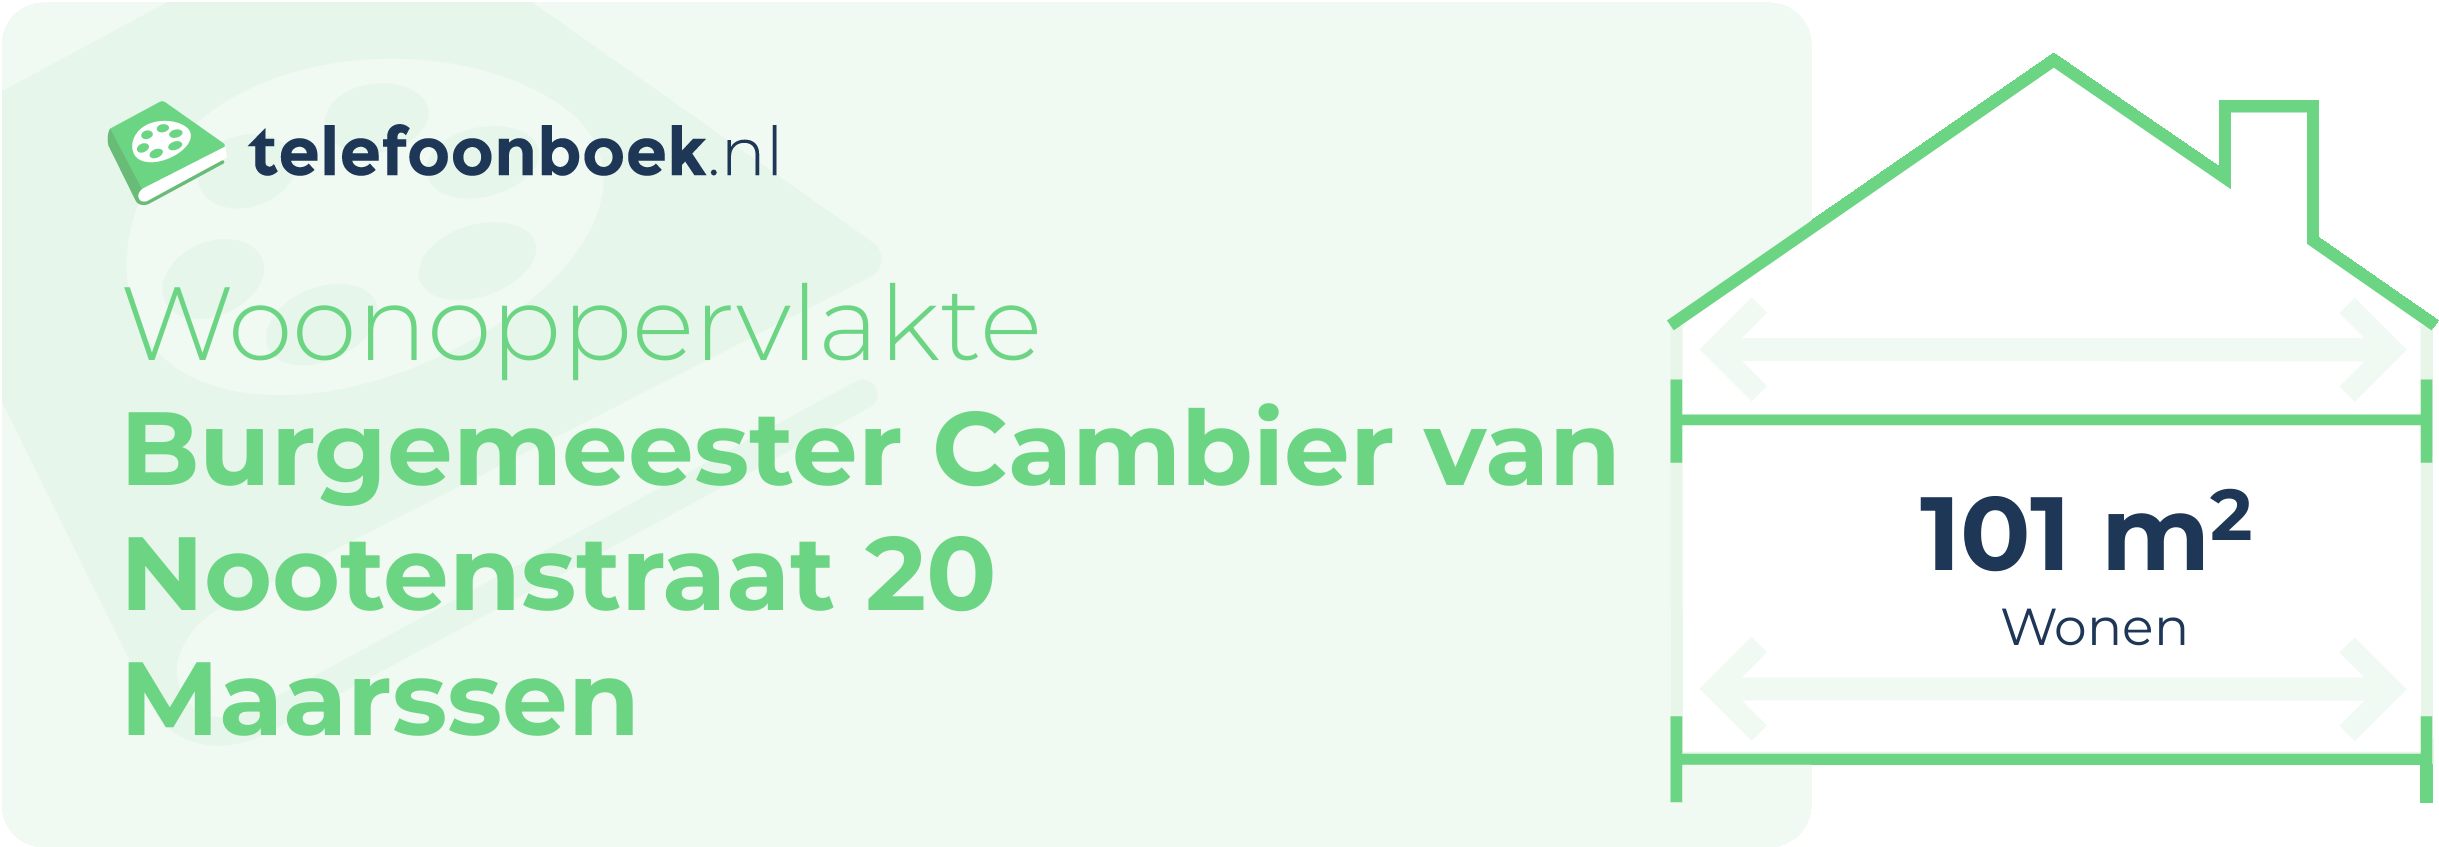 Woonoppervlakte Burgemeester Cambier Van Nootenstraat 20 Maarssen